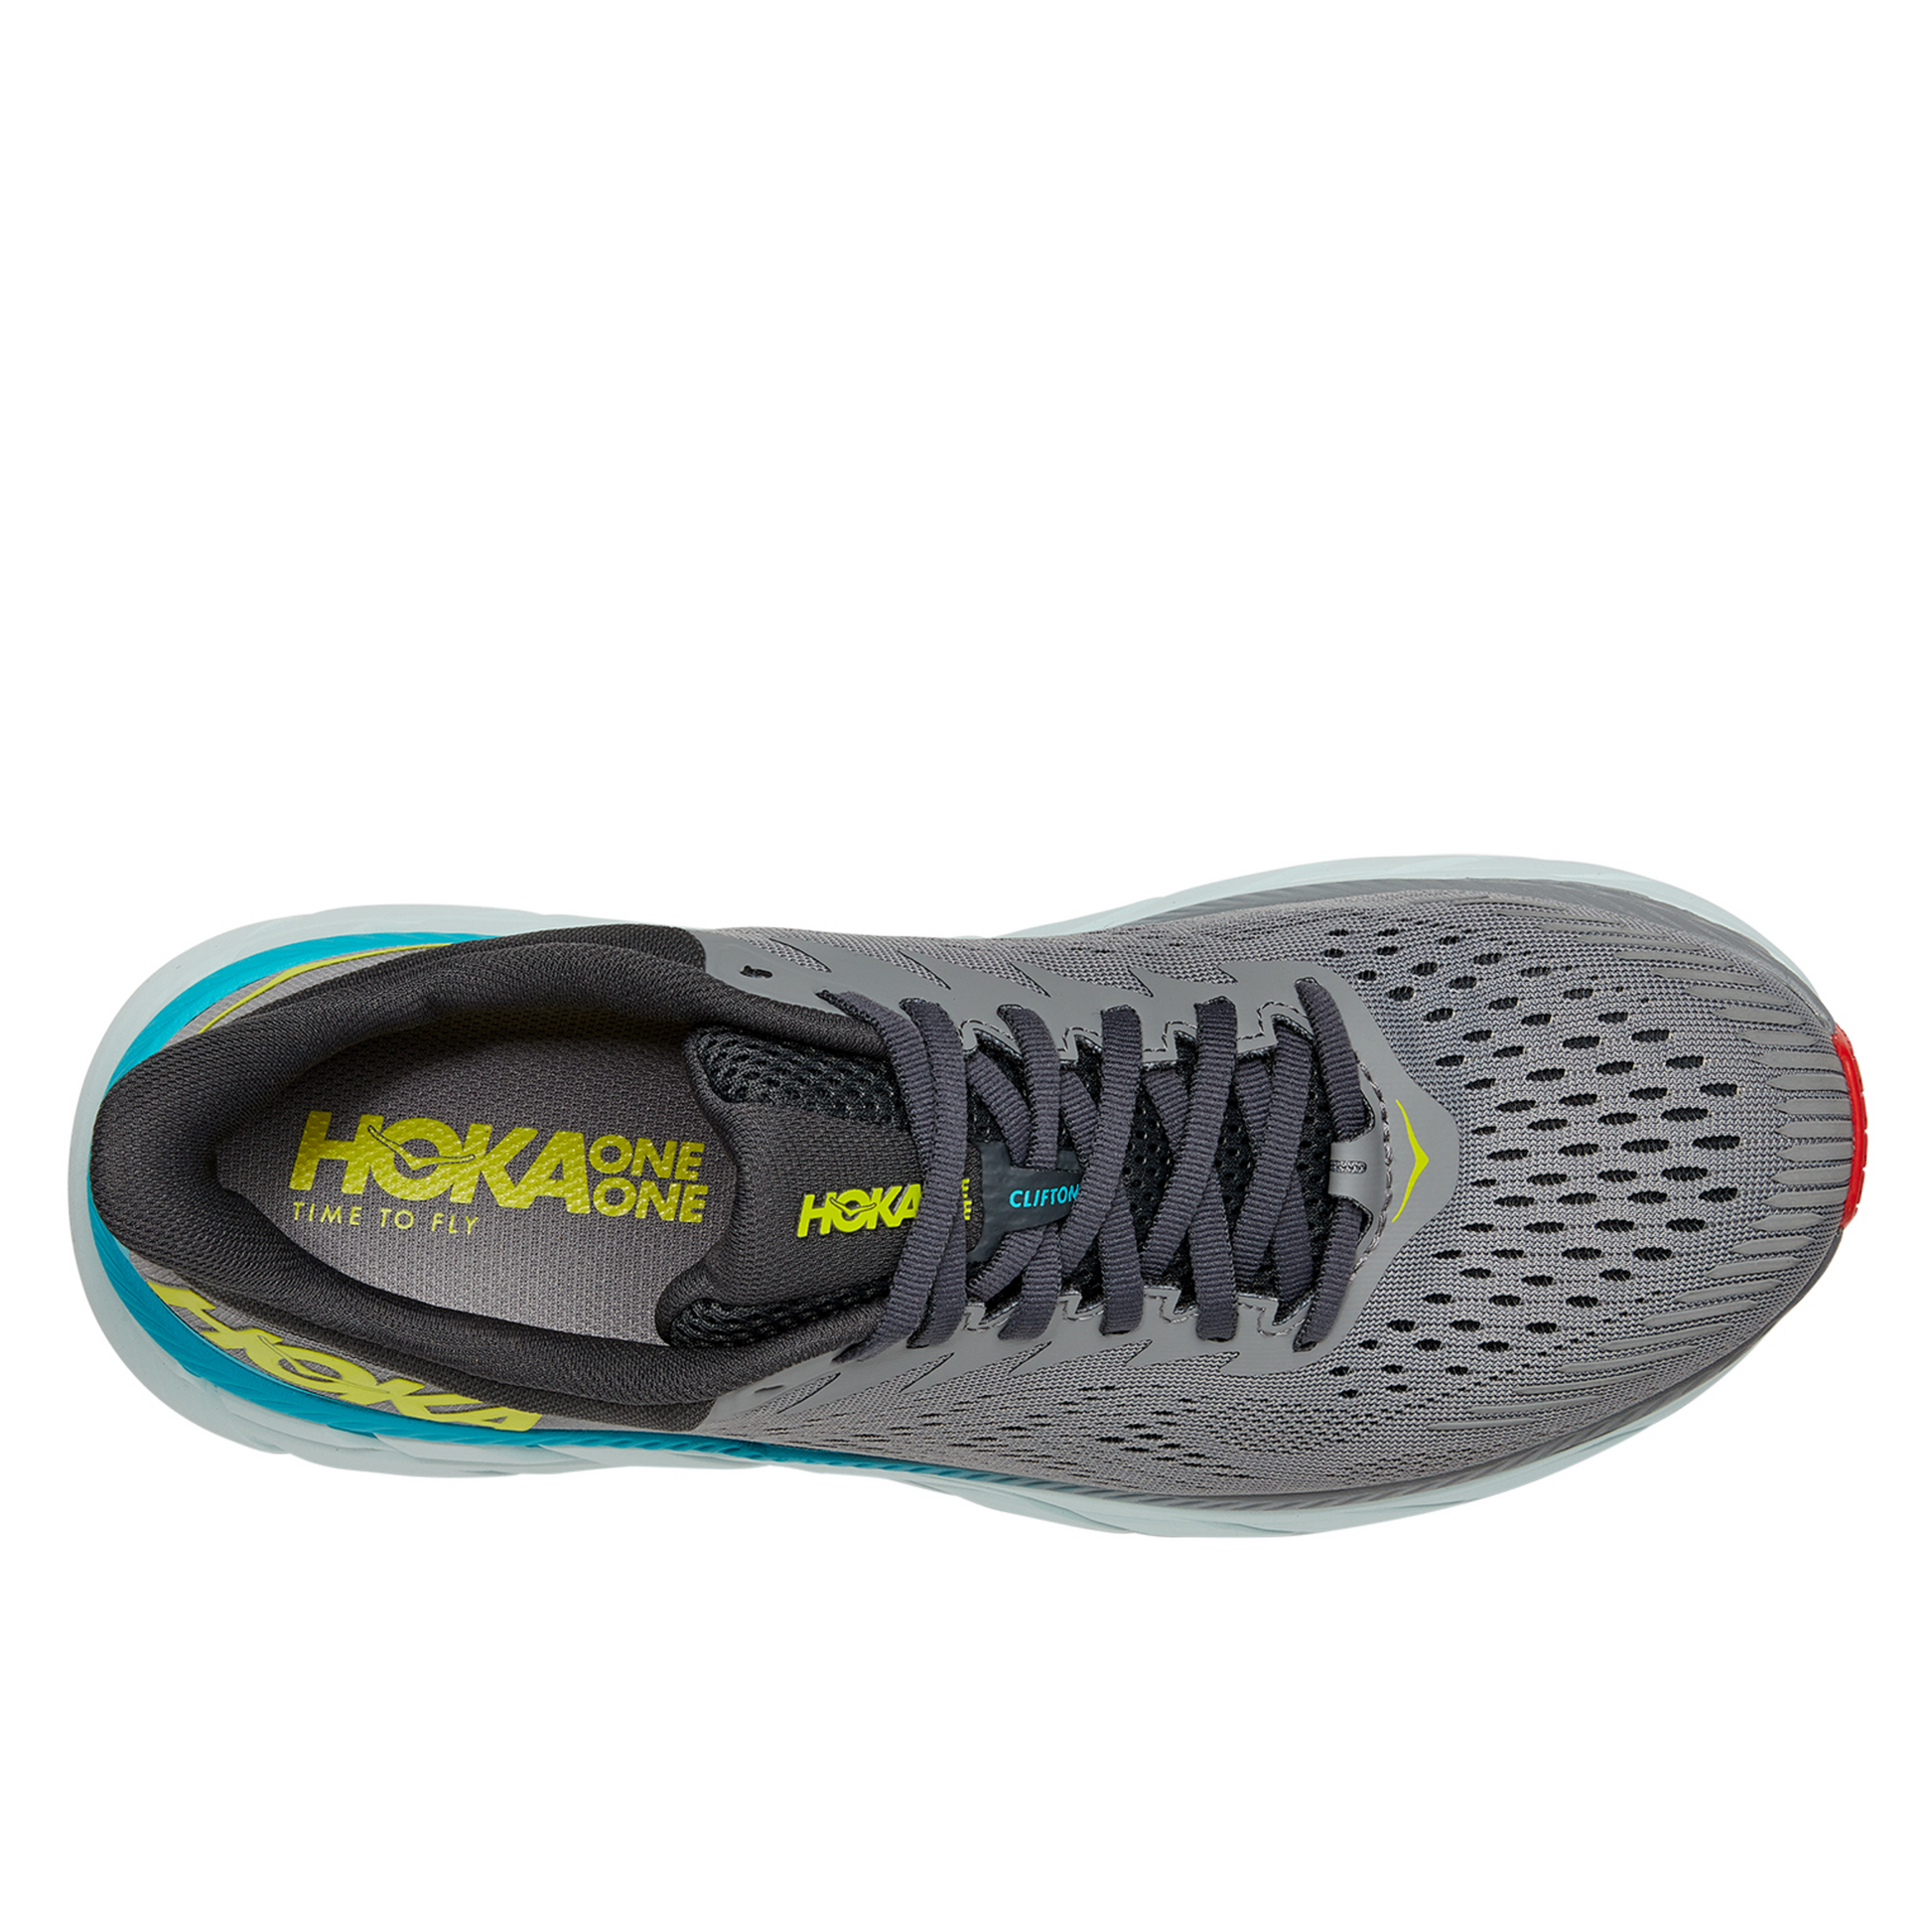 Hoka Clifton 7 - נעלי ספורט גברים הוקה קליפטון 7 עודפים